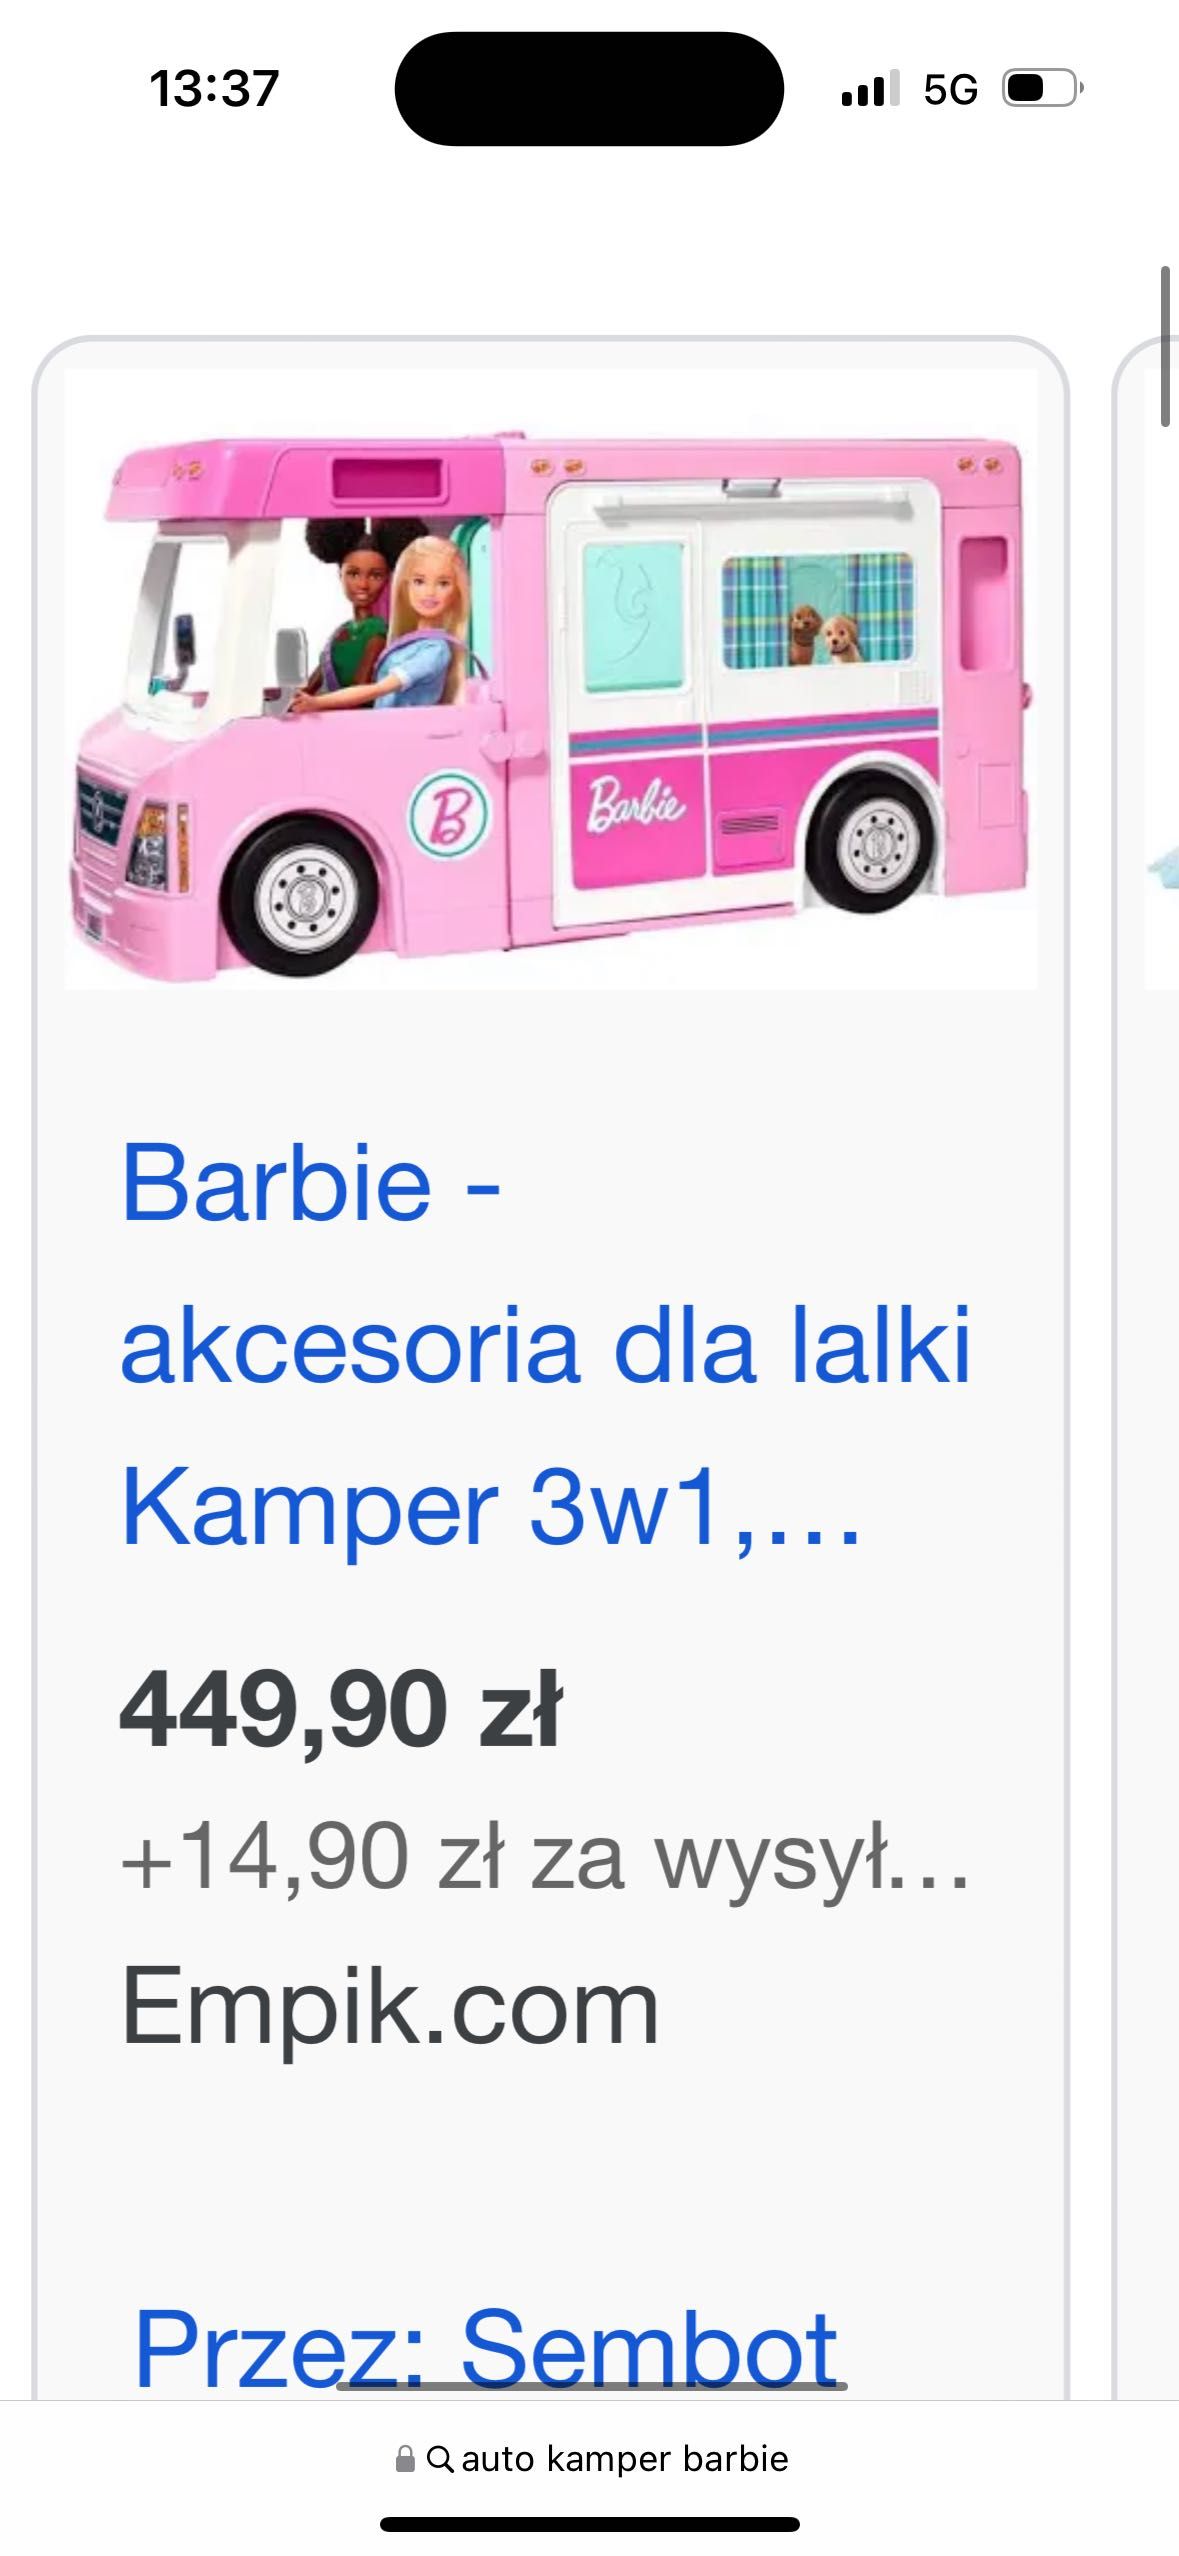 Zabawka kamper barbie